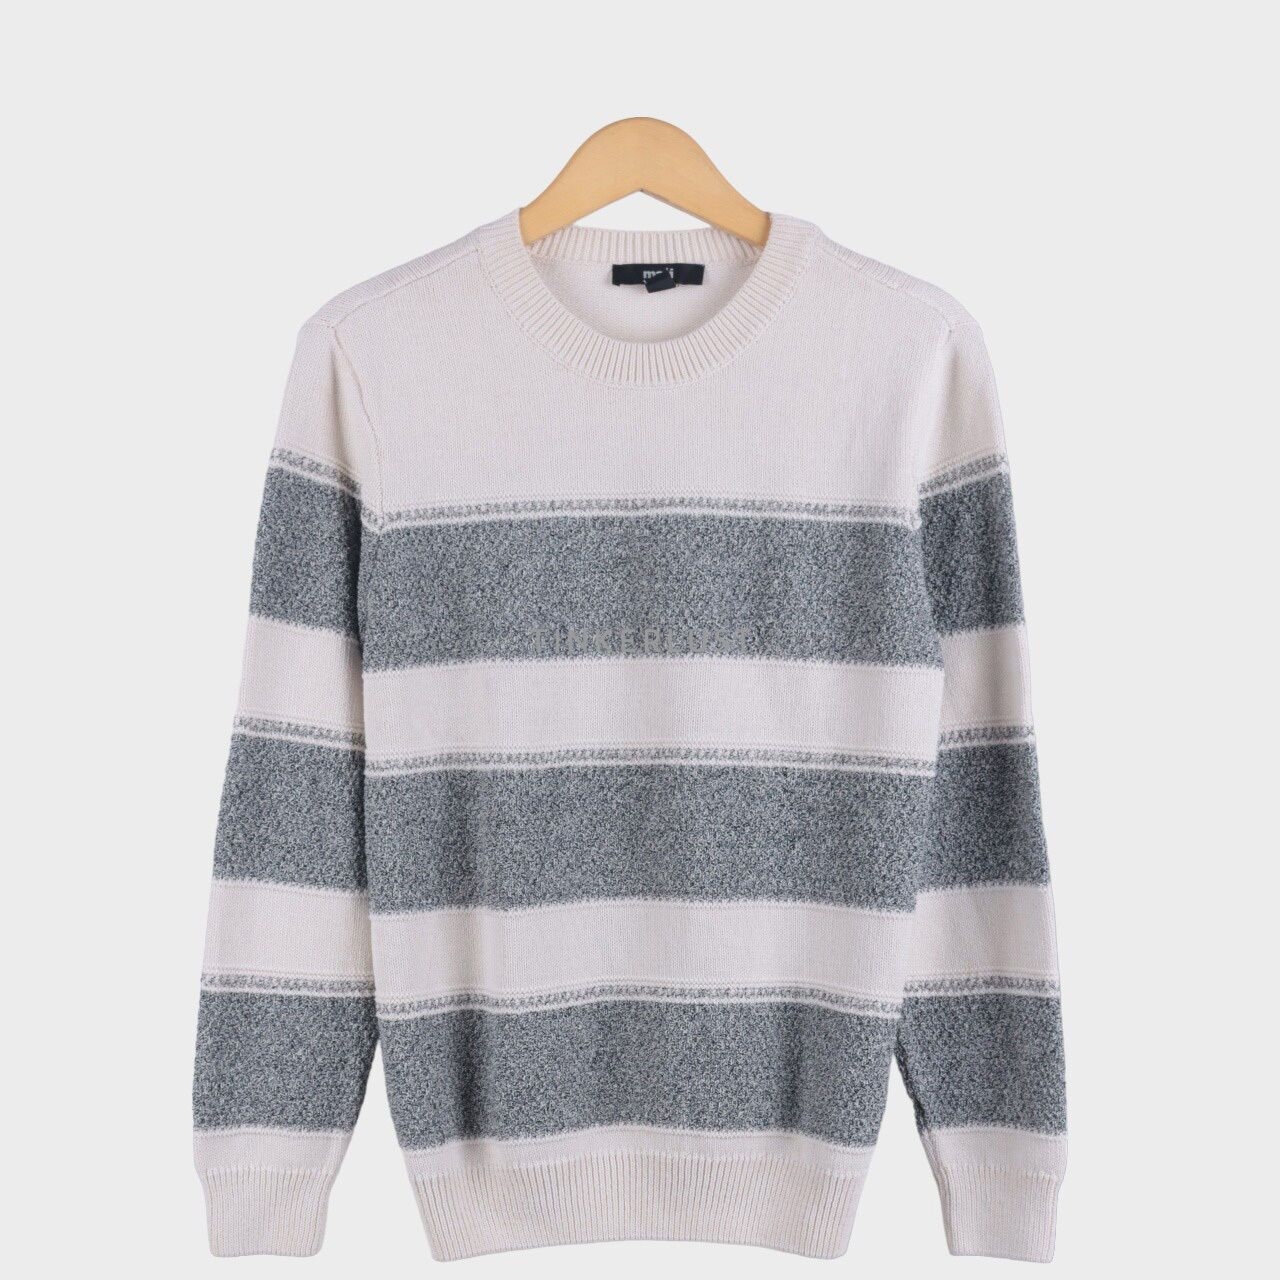 Mavi Black & White Sweater